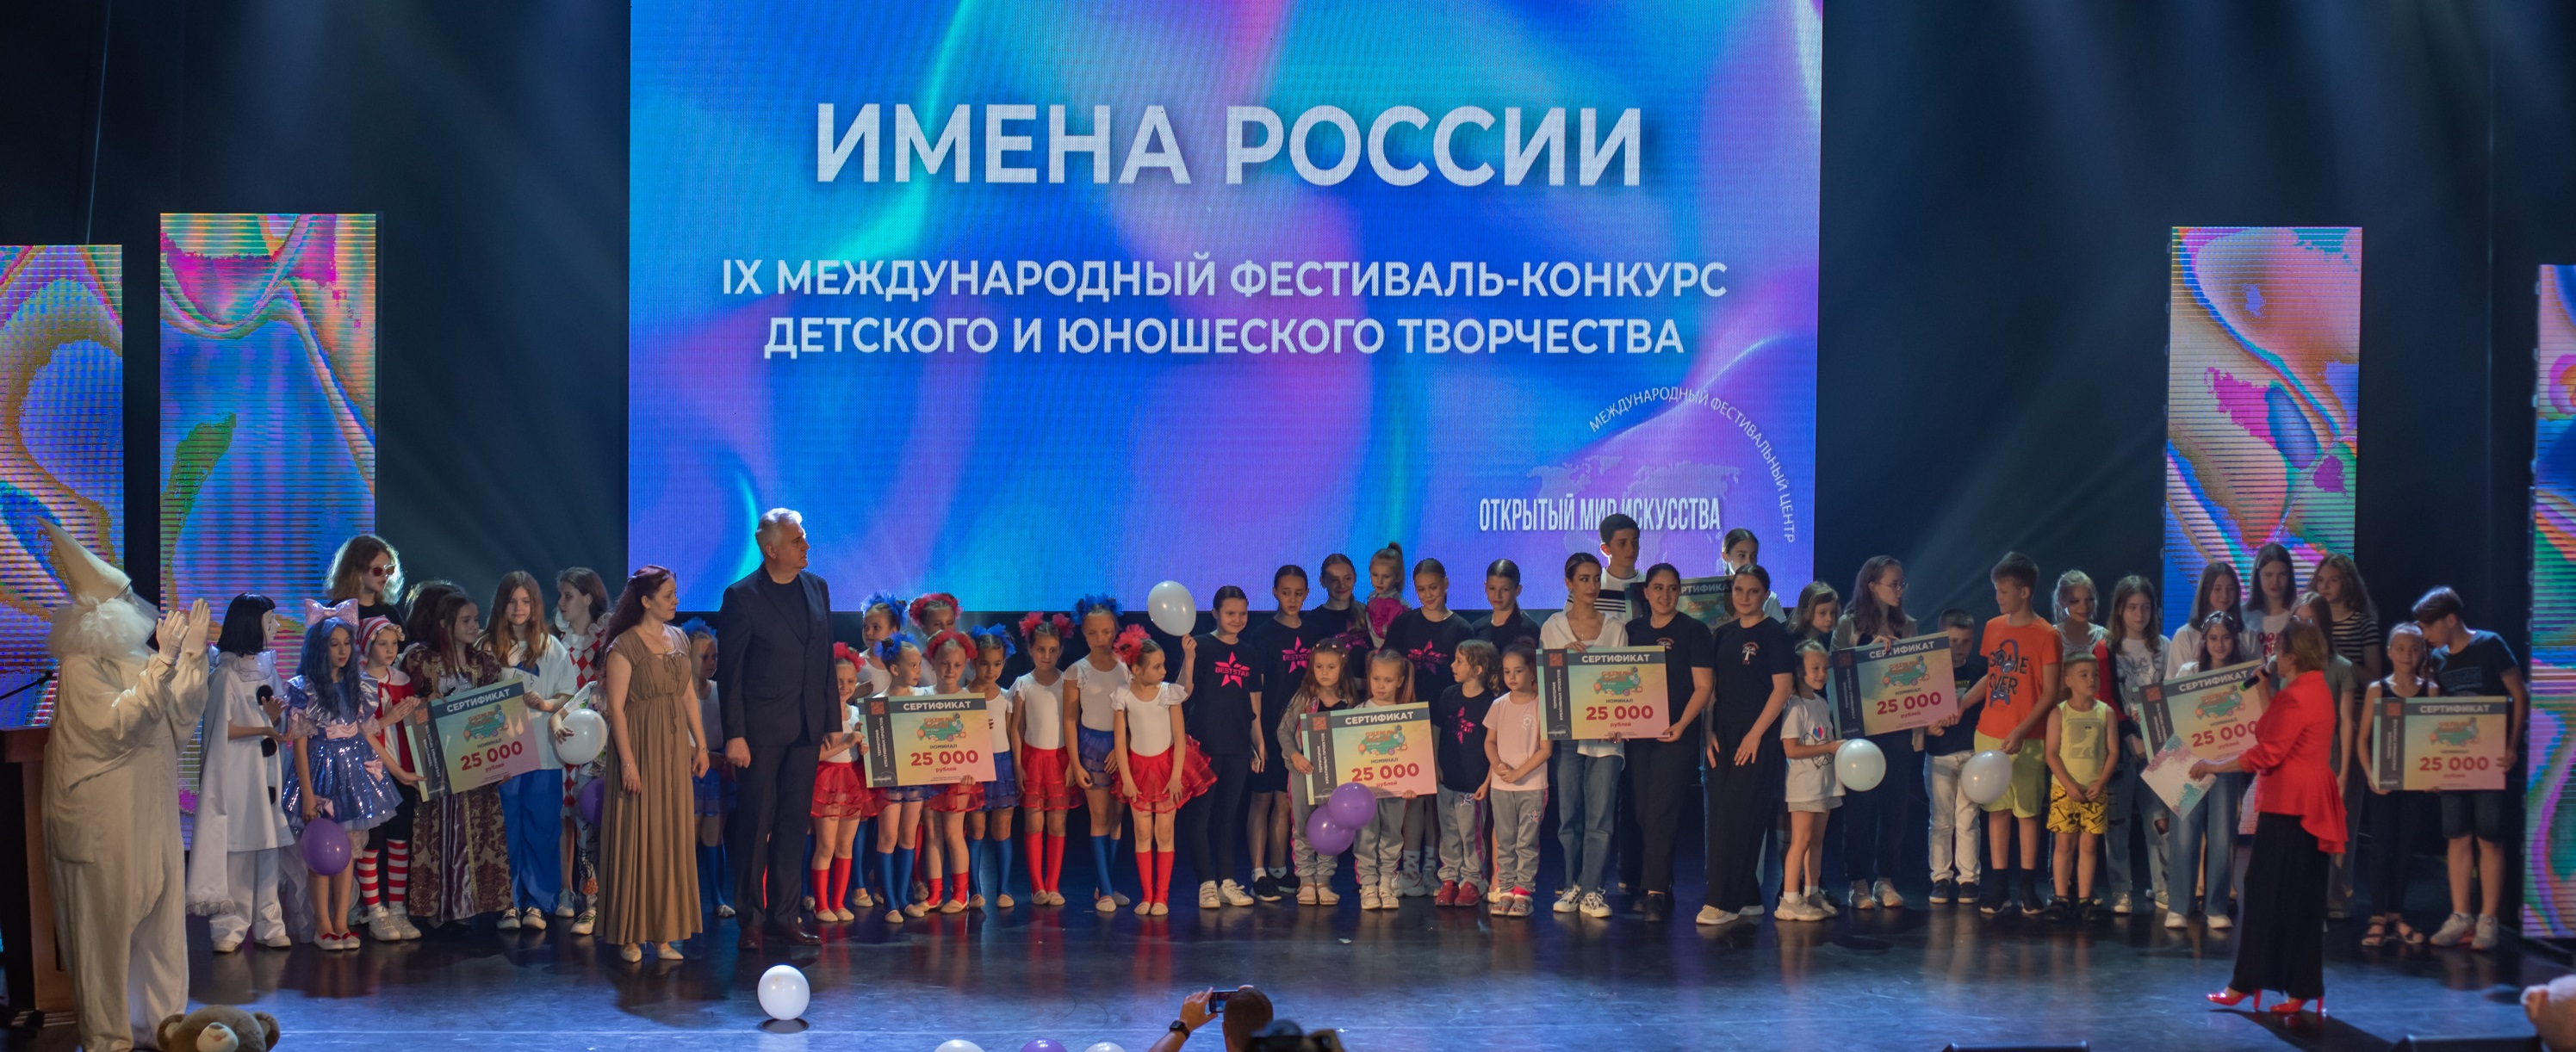 Фото Международный фестиваль-конкурс ИМЕНА РОССИИ отборочный этап Волгоград